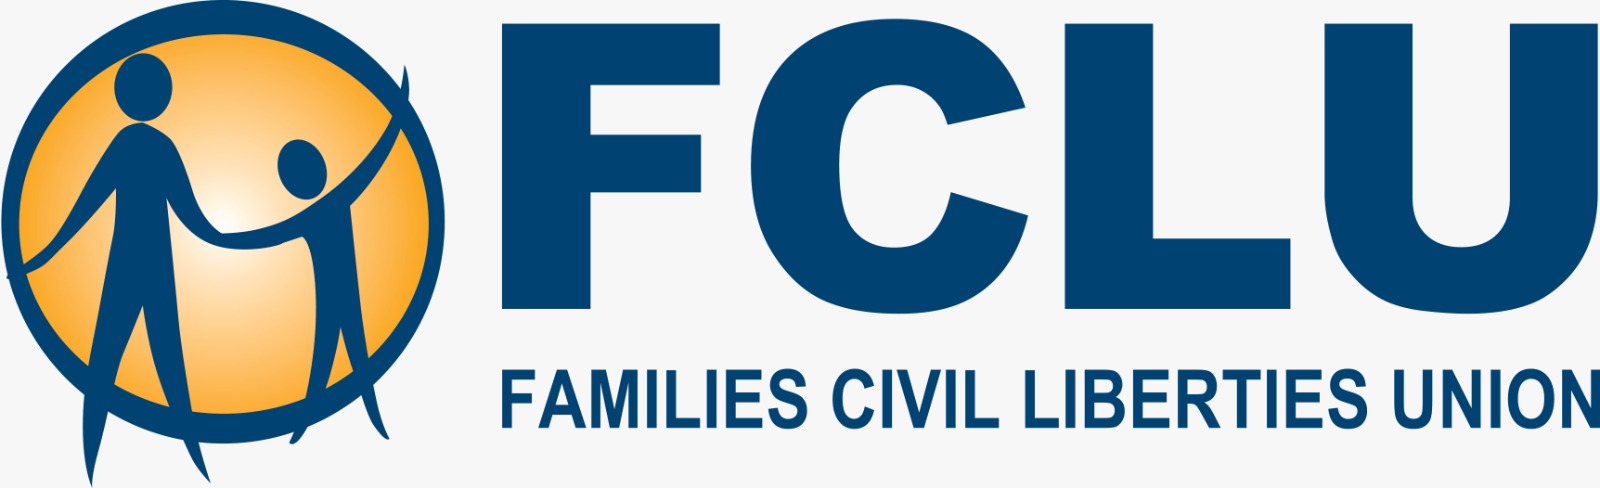 FCLU logo.jpg